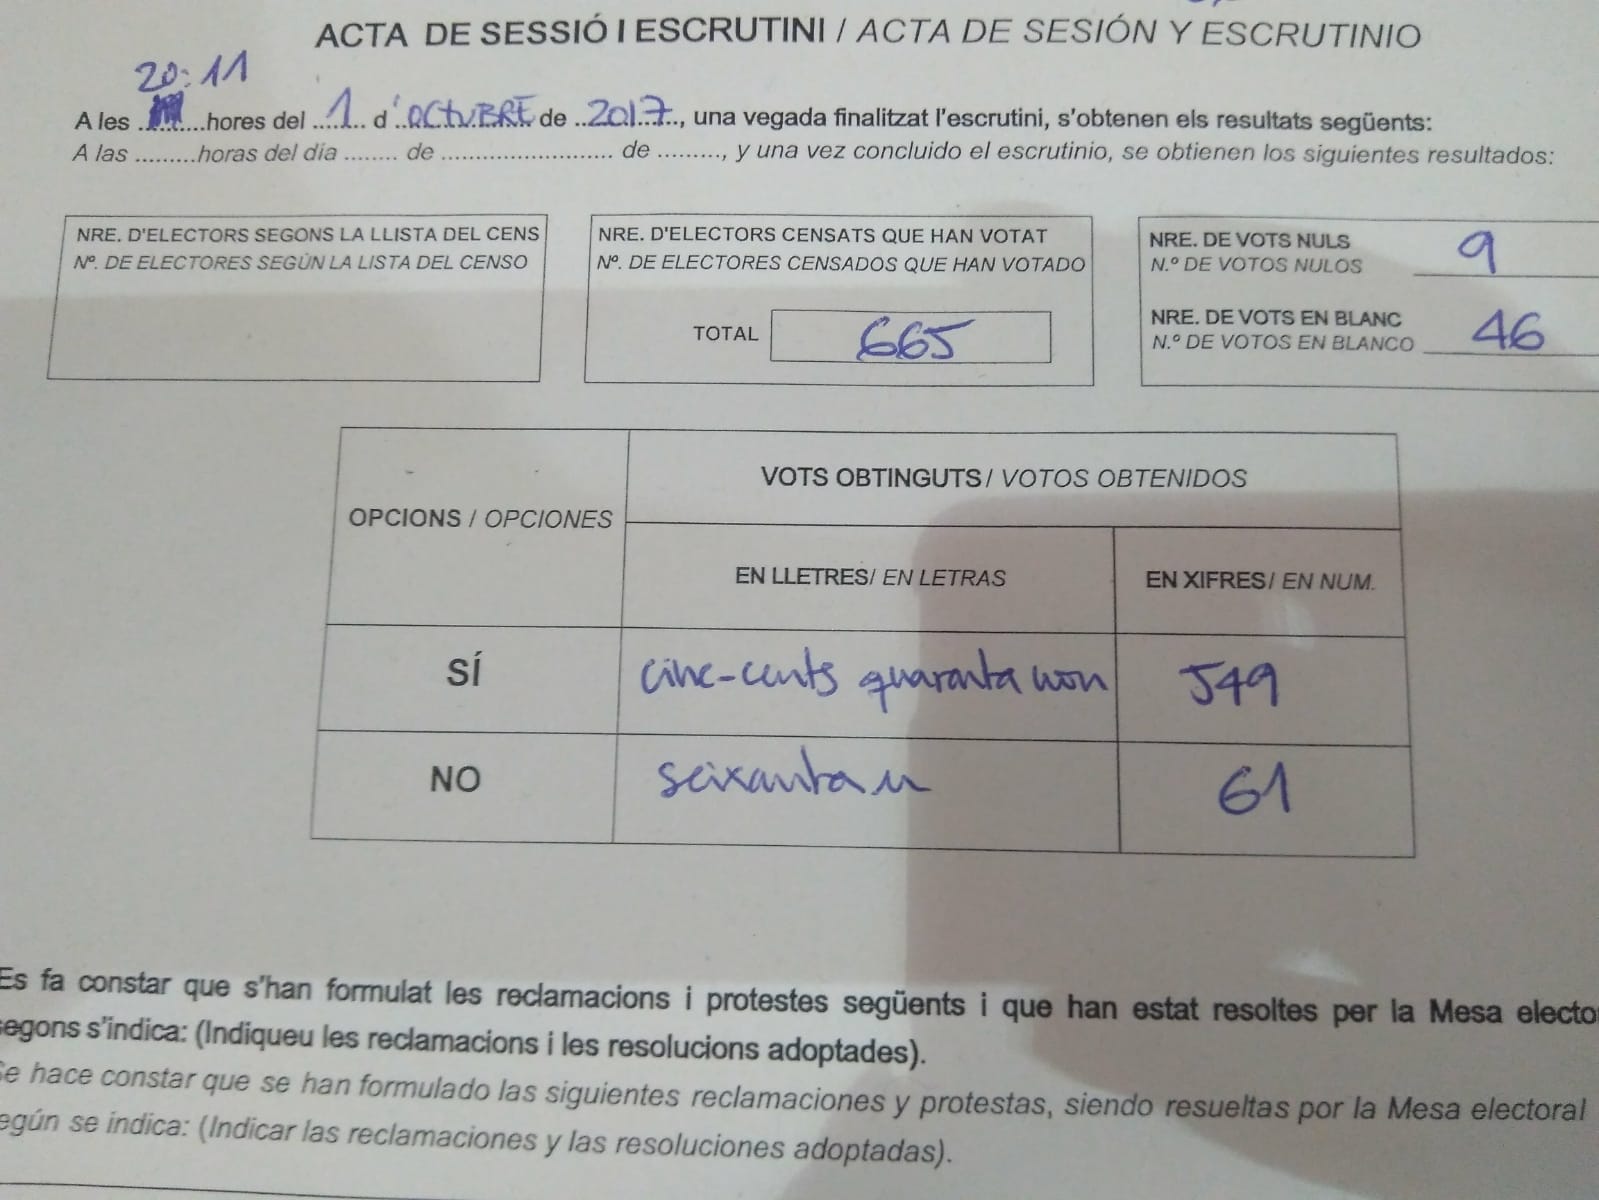 Anas balsošanas iecirkņa rezultātu tabula. Foto: Ana Garcia